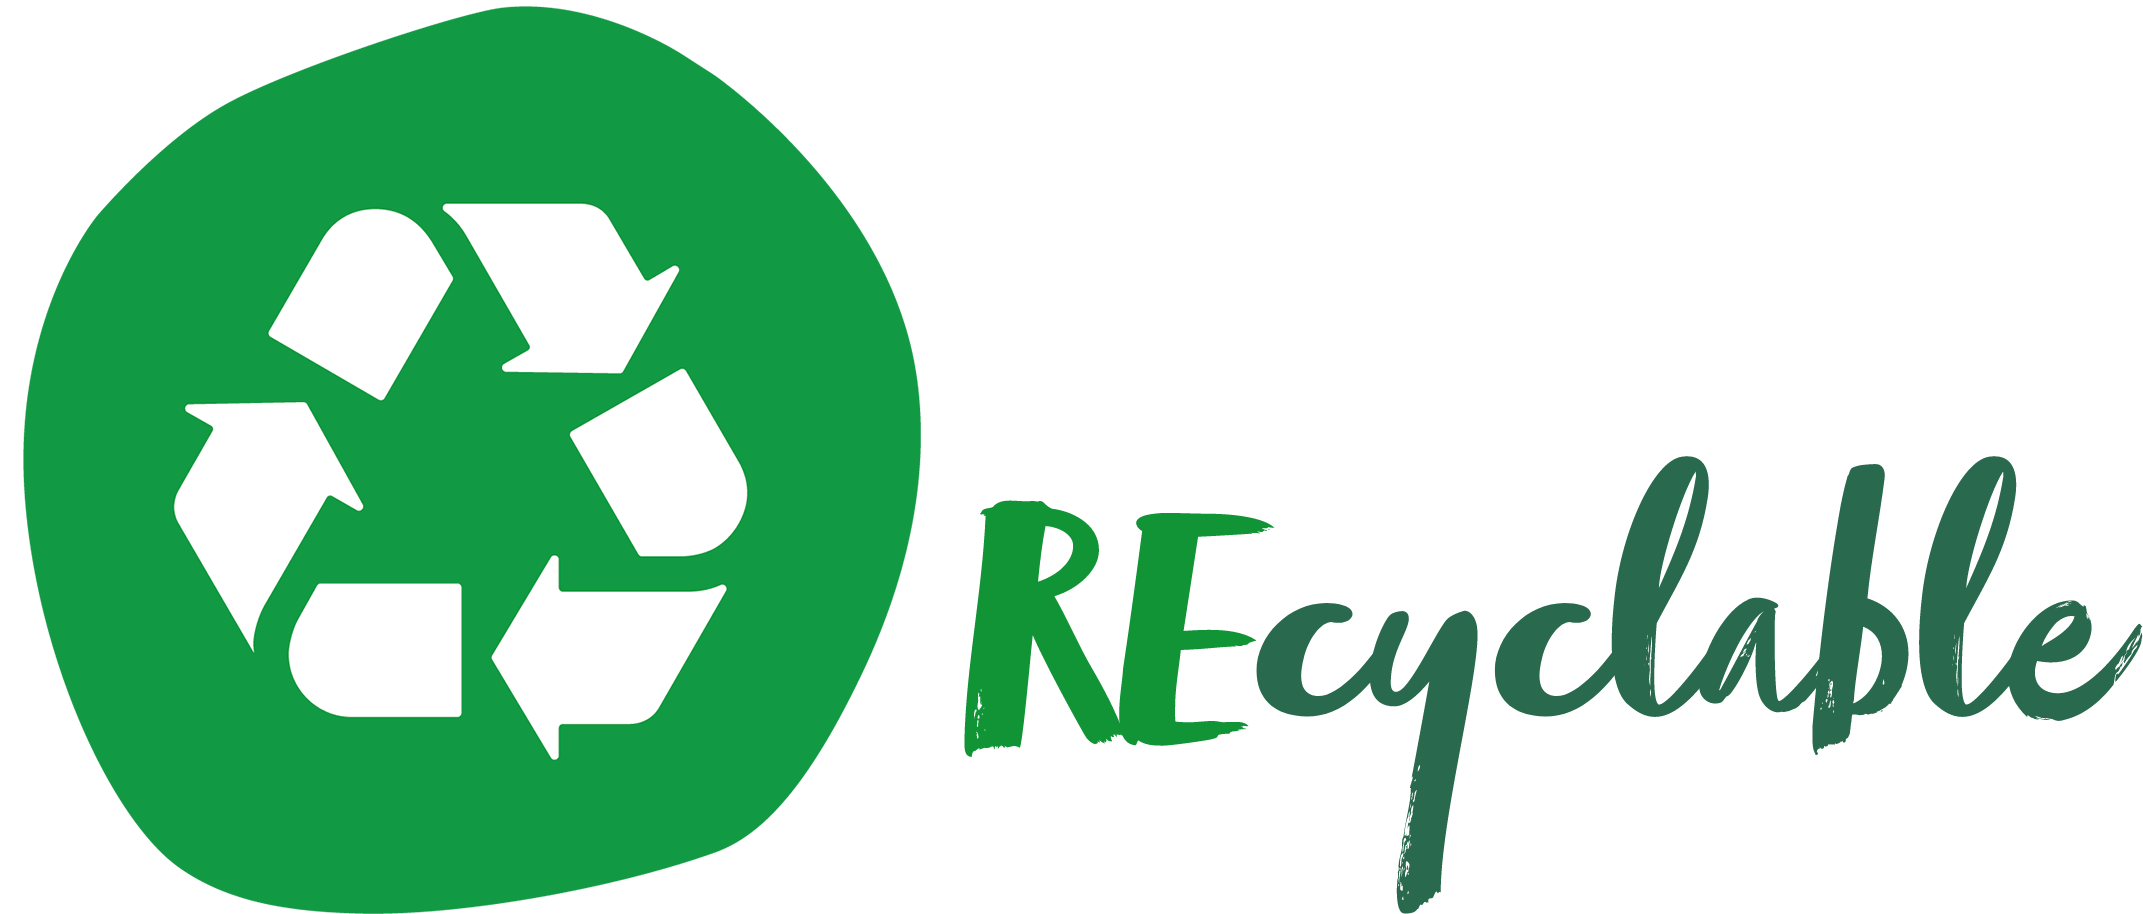 Wipak|Recyclable